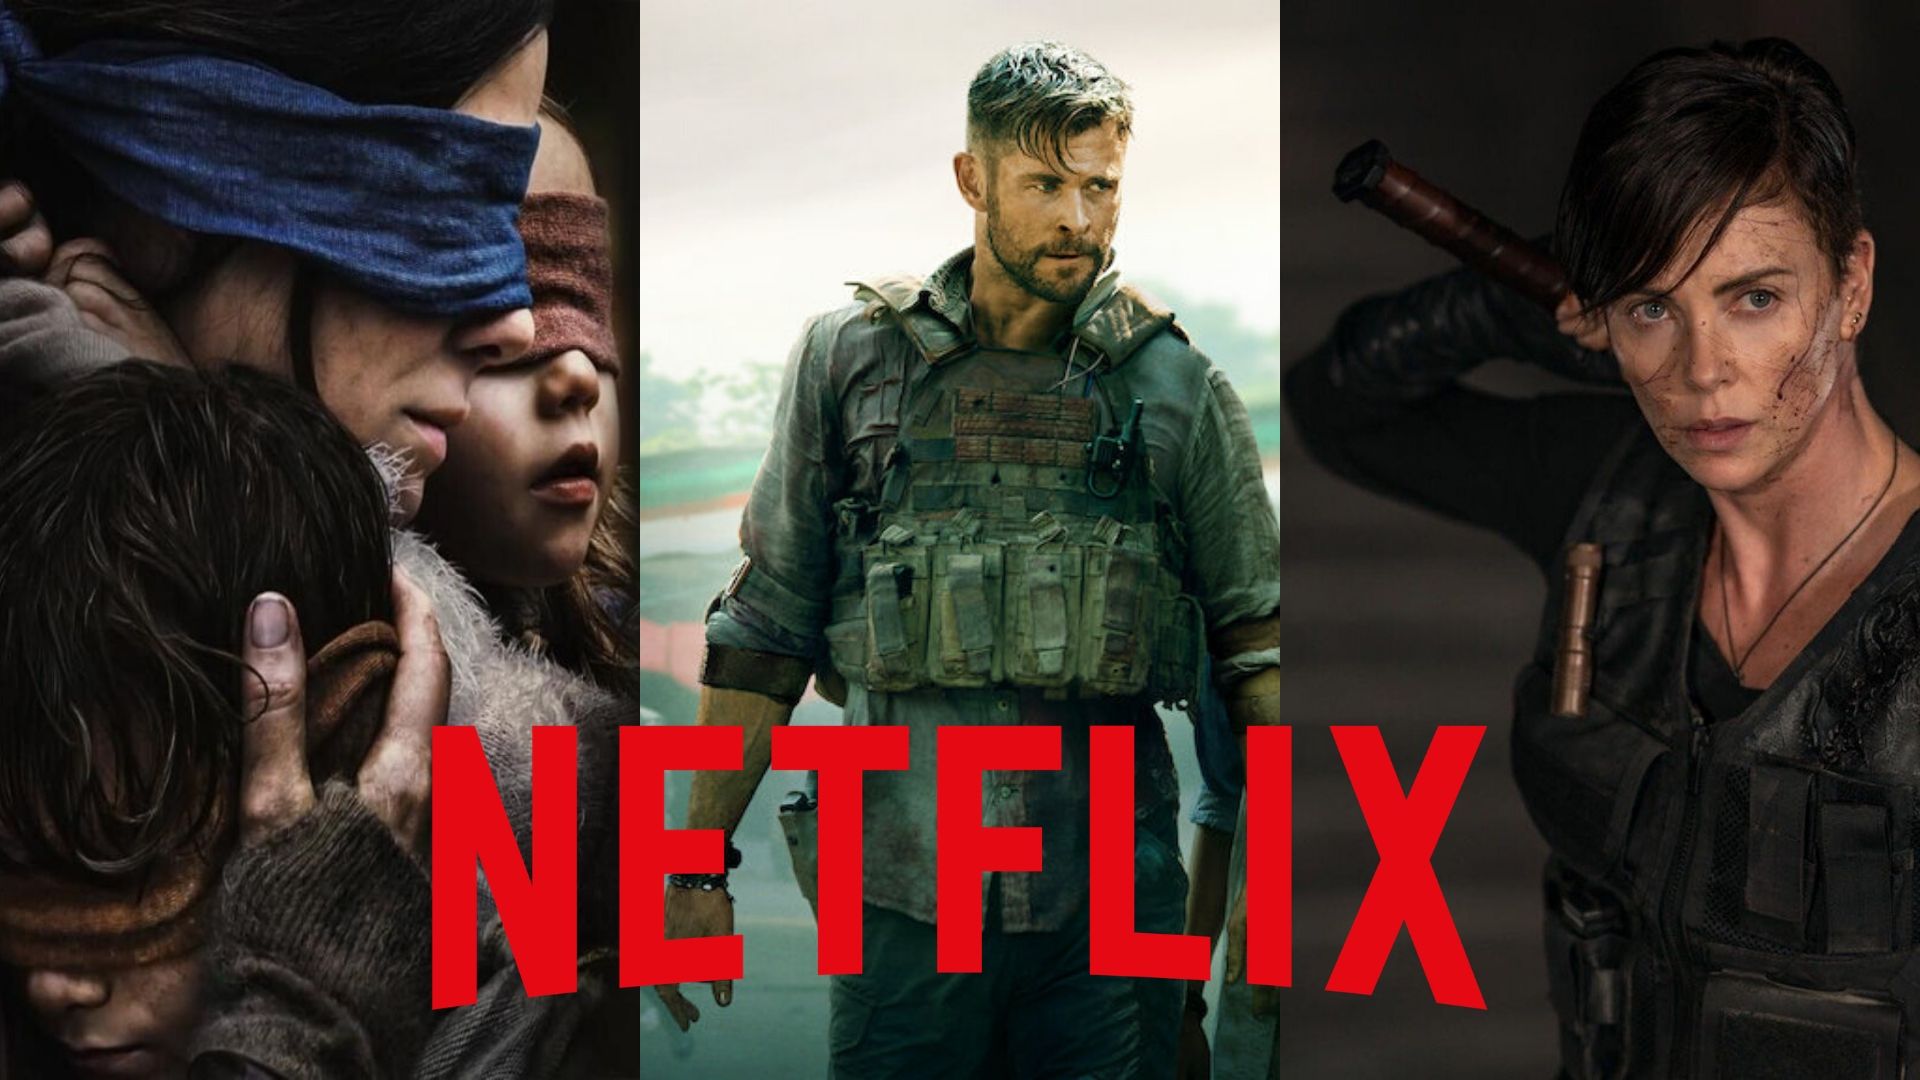 Netflix propose de regarder des films et séries gratuitement sans être abonné : comment en profiter ?